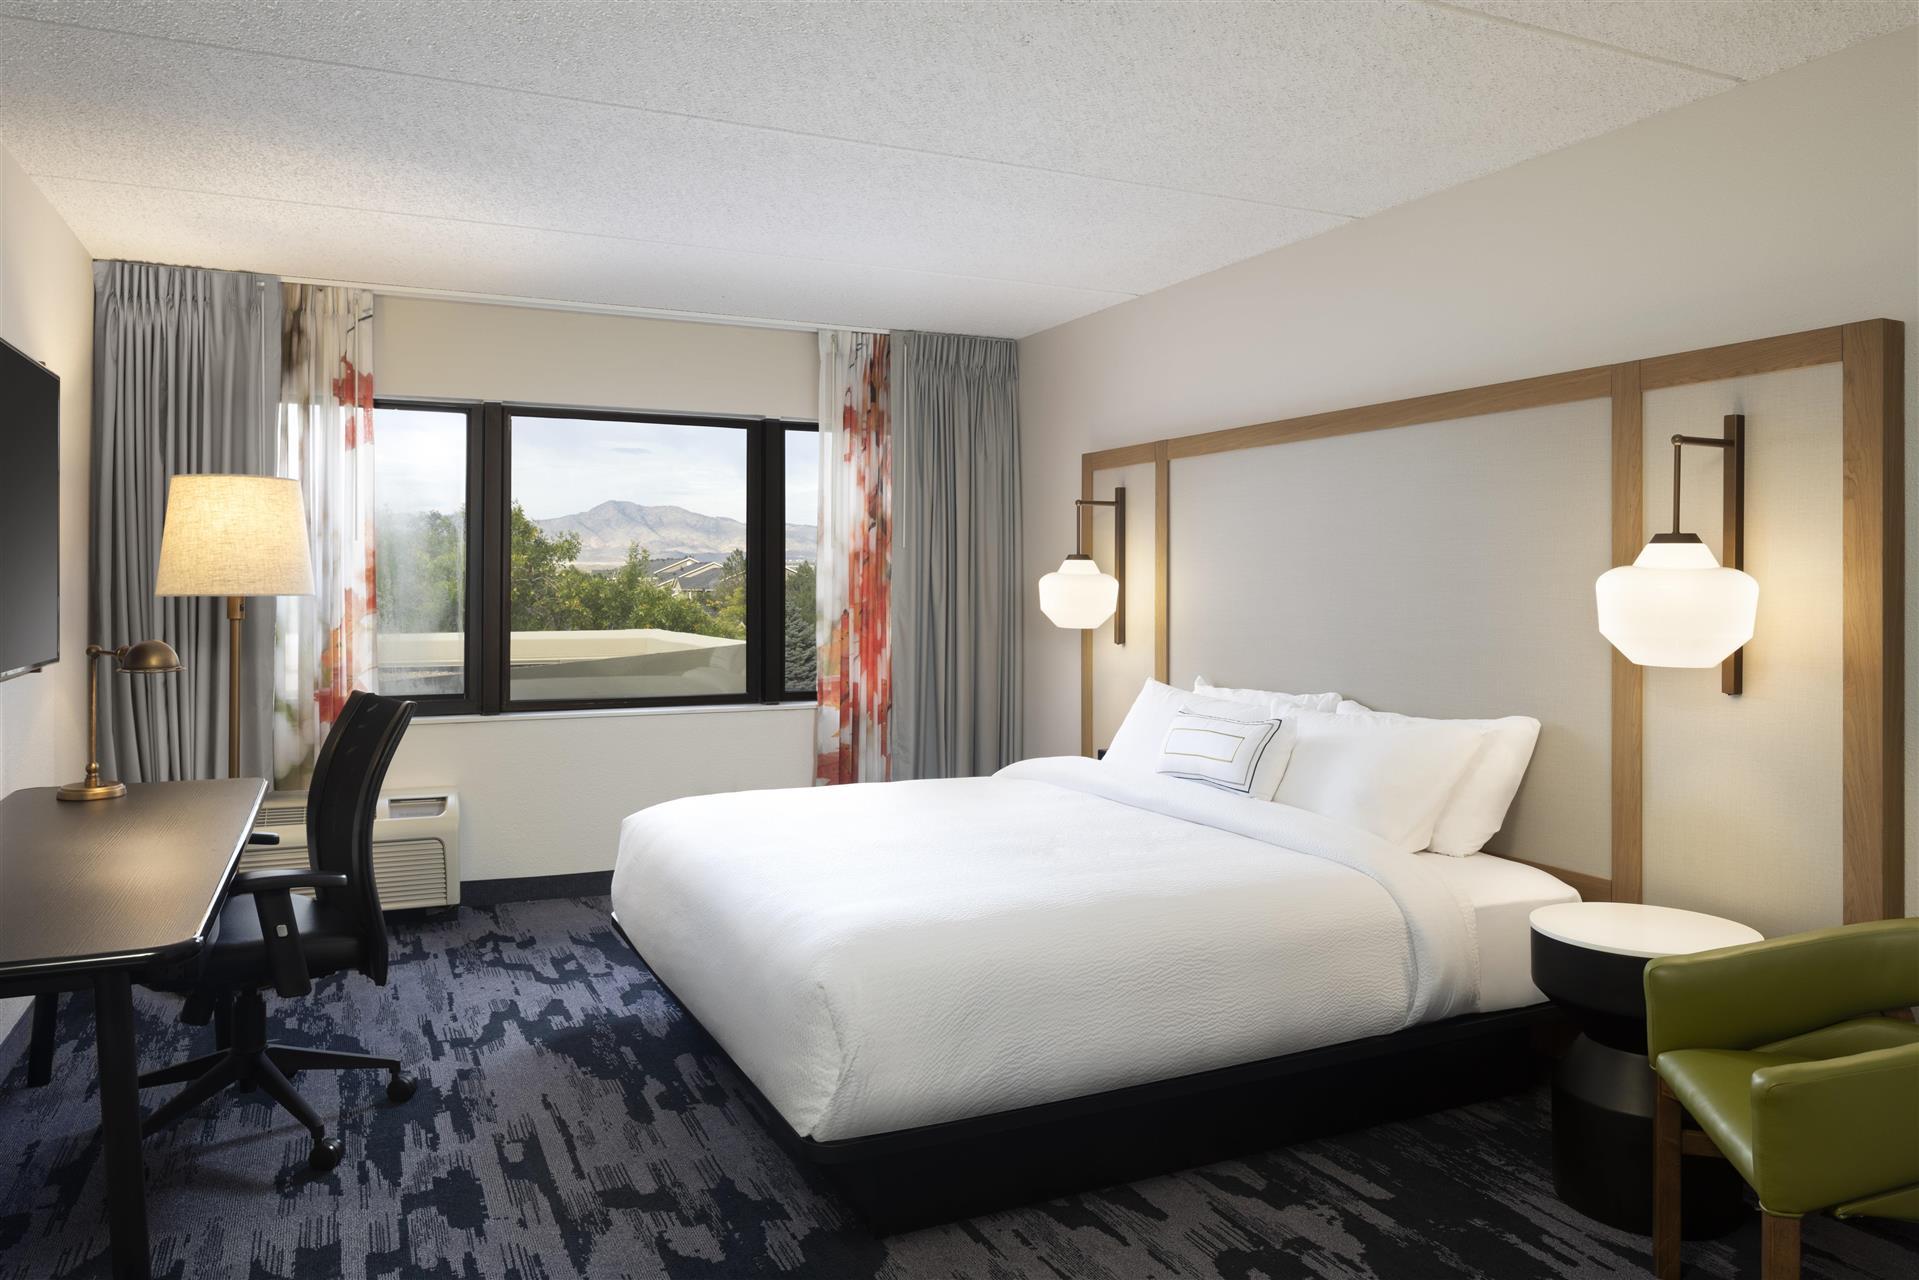 Fairfield Inn & Suites Denver Southwest/Lakewood in Lakewood, CO